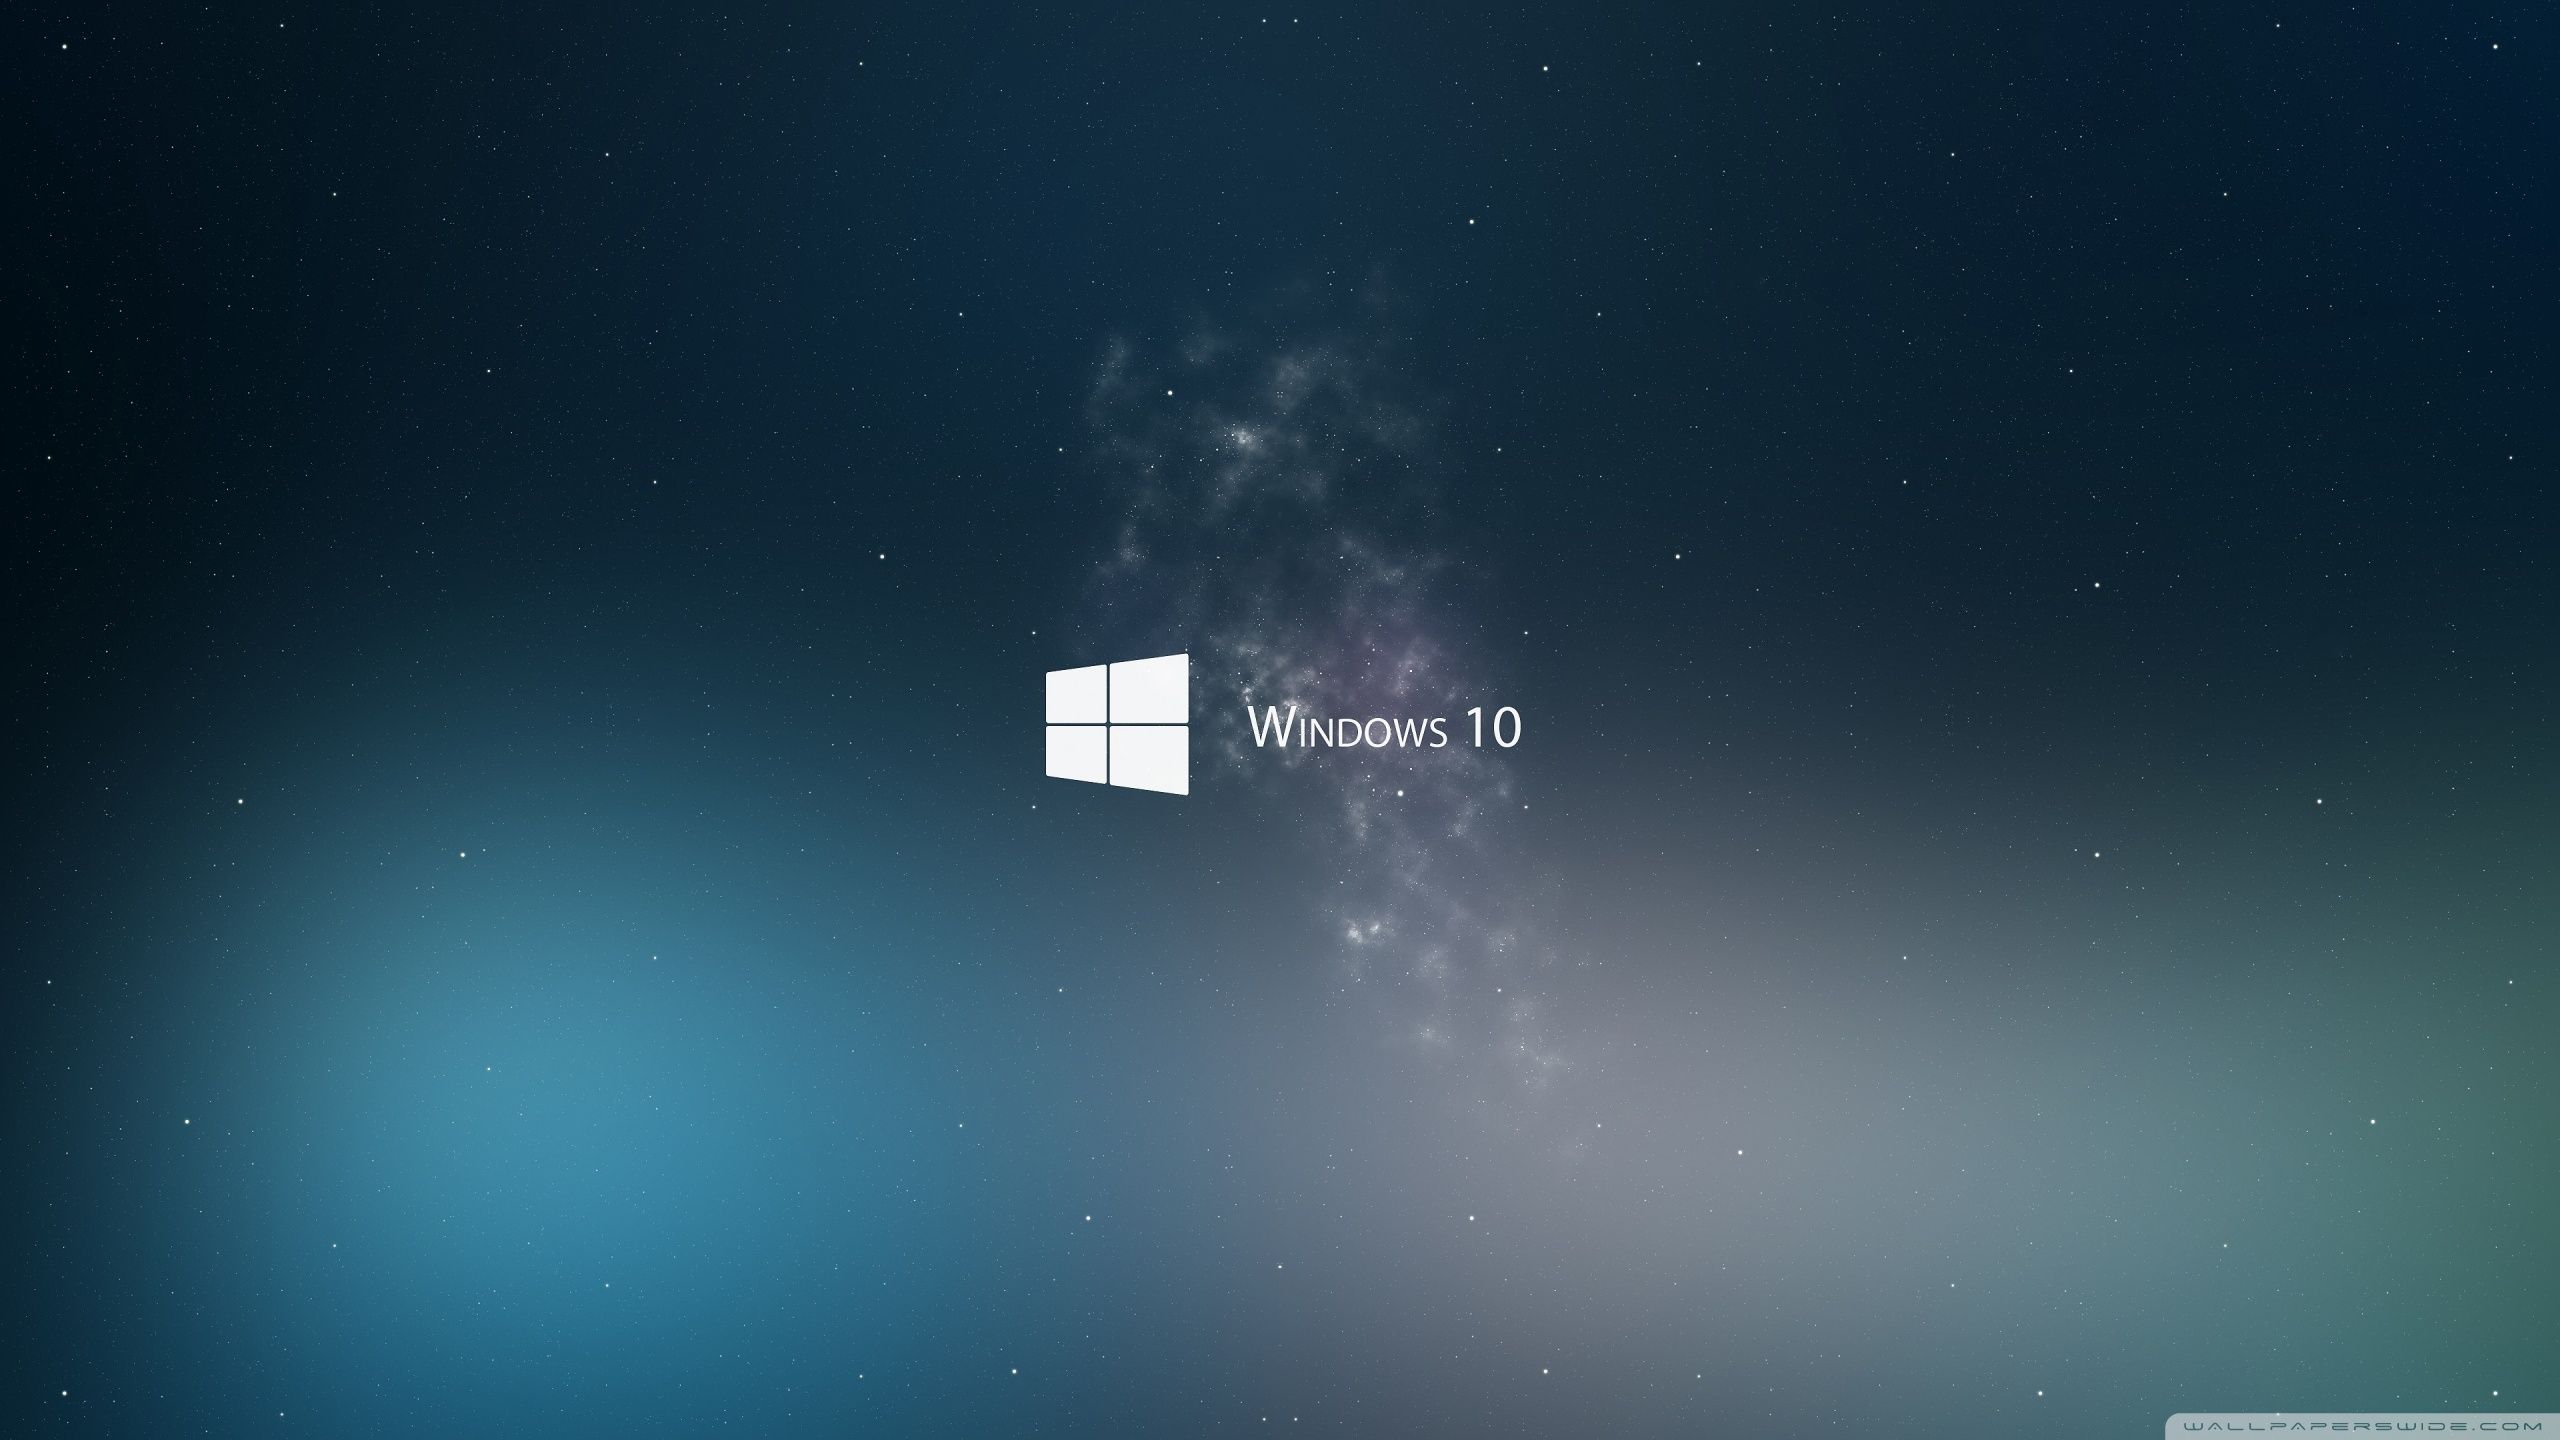 Windows 10 Ultra HD Desktop Background Wallpaper for: Widescreen